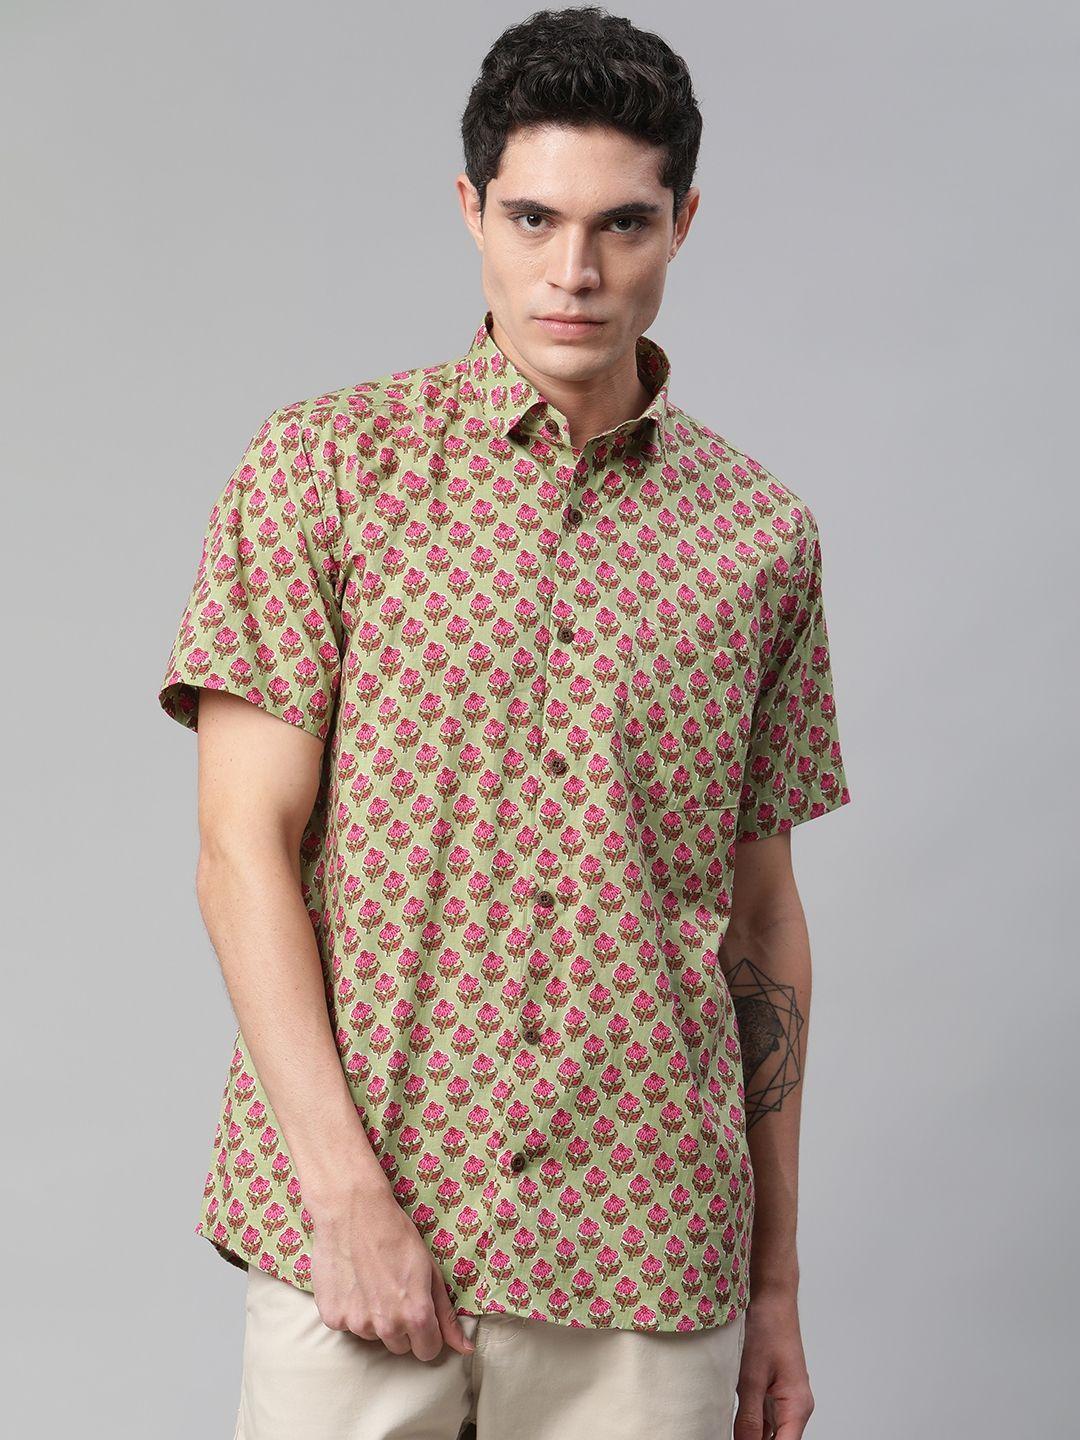 millennial men green comfort printed casual shirt